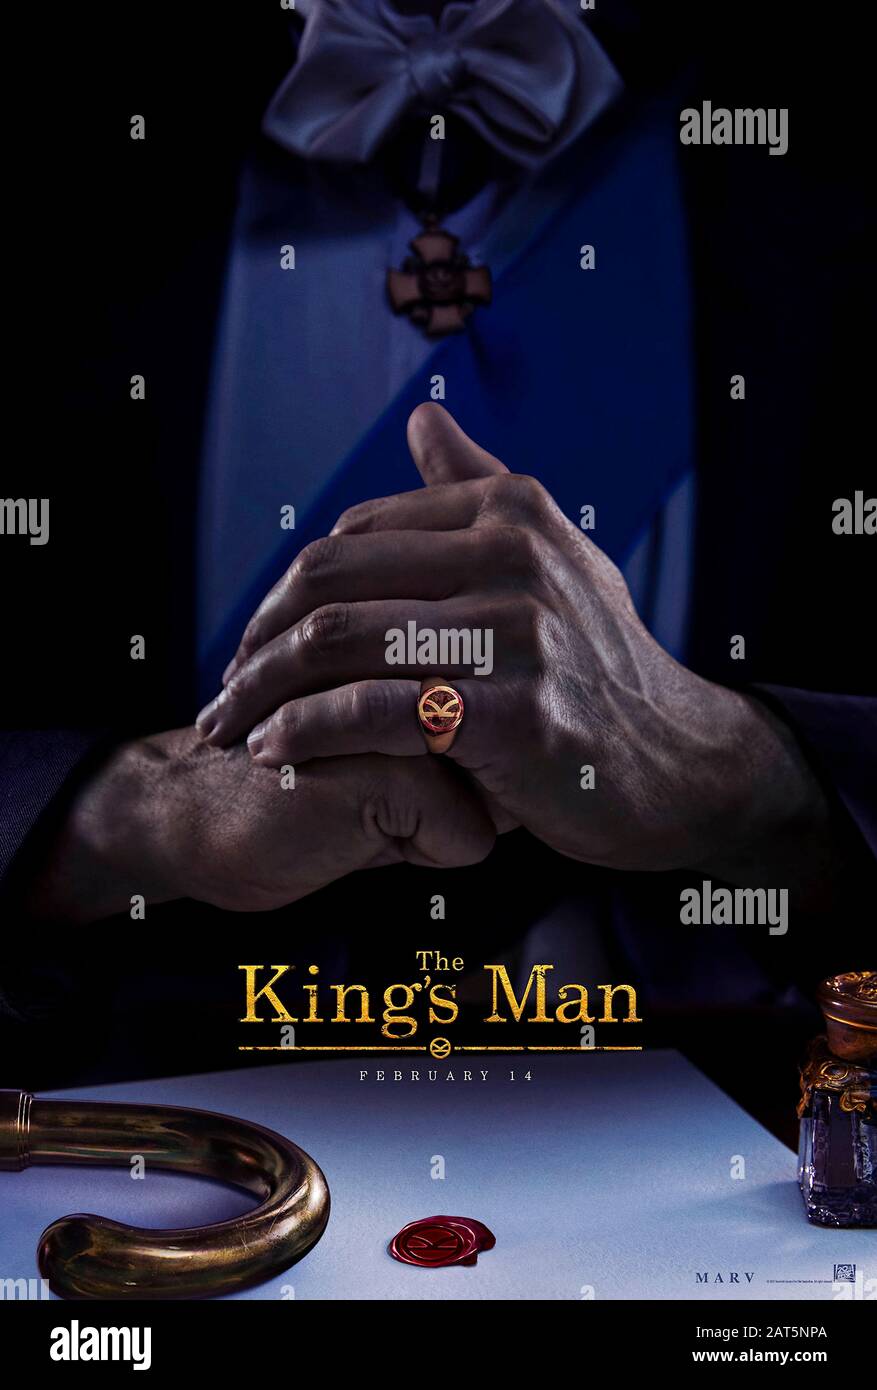 The King's Man (2020) unter der Regie von Matthew Vaughn und mit Gemma Arterton, Matthew Goode, Aaron Taylor-Johnson, Djimon Hounsou und Charles Dance in den Hauptrollen. Prequel zu den Kingsman-Filmen, in denen eine Versammlung der schlimmsten Bösewichte und kriminellen Drahtzieher der Geschichte viel gestoppt wird, bevor sie Millionen töten. Stockfoto